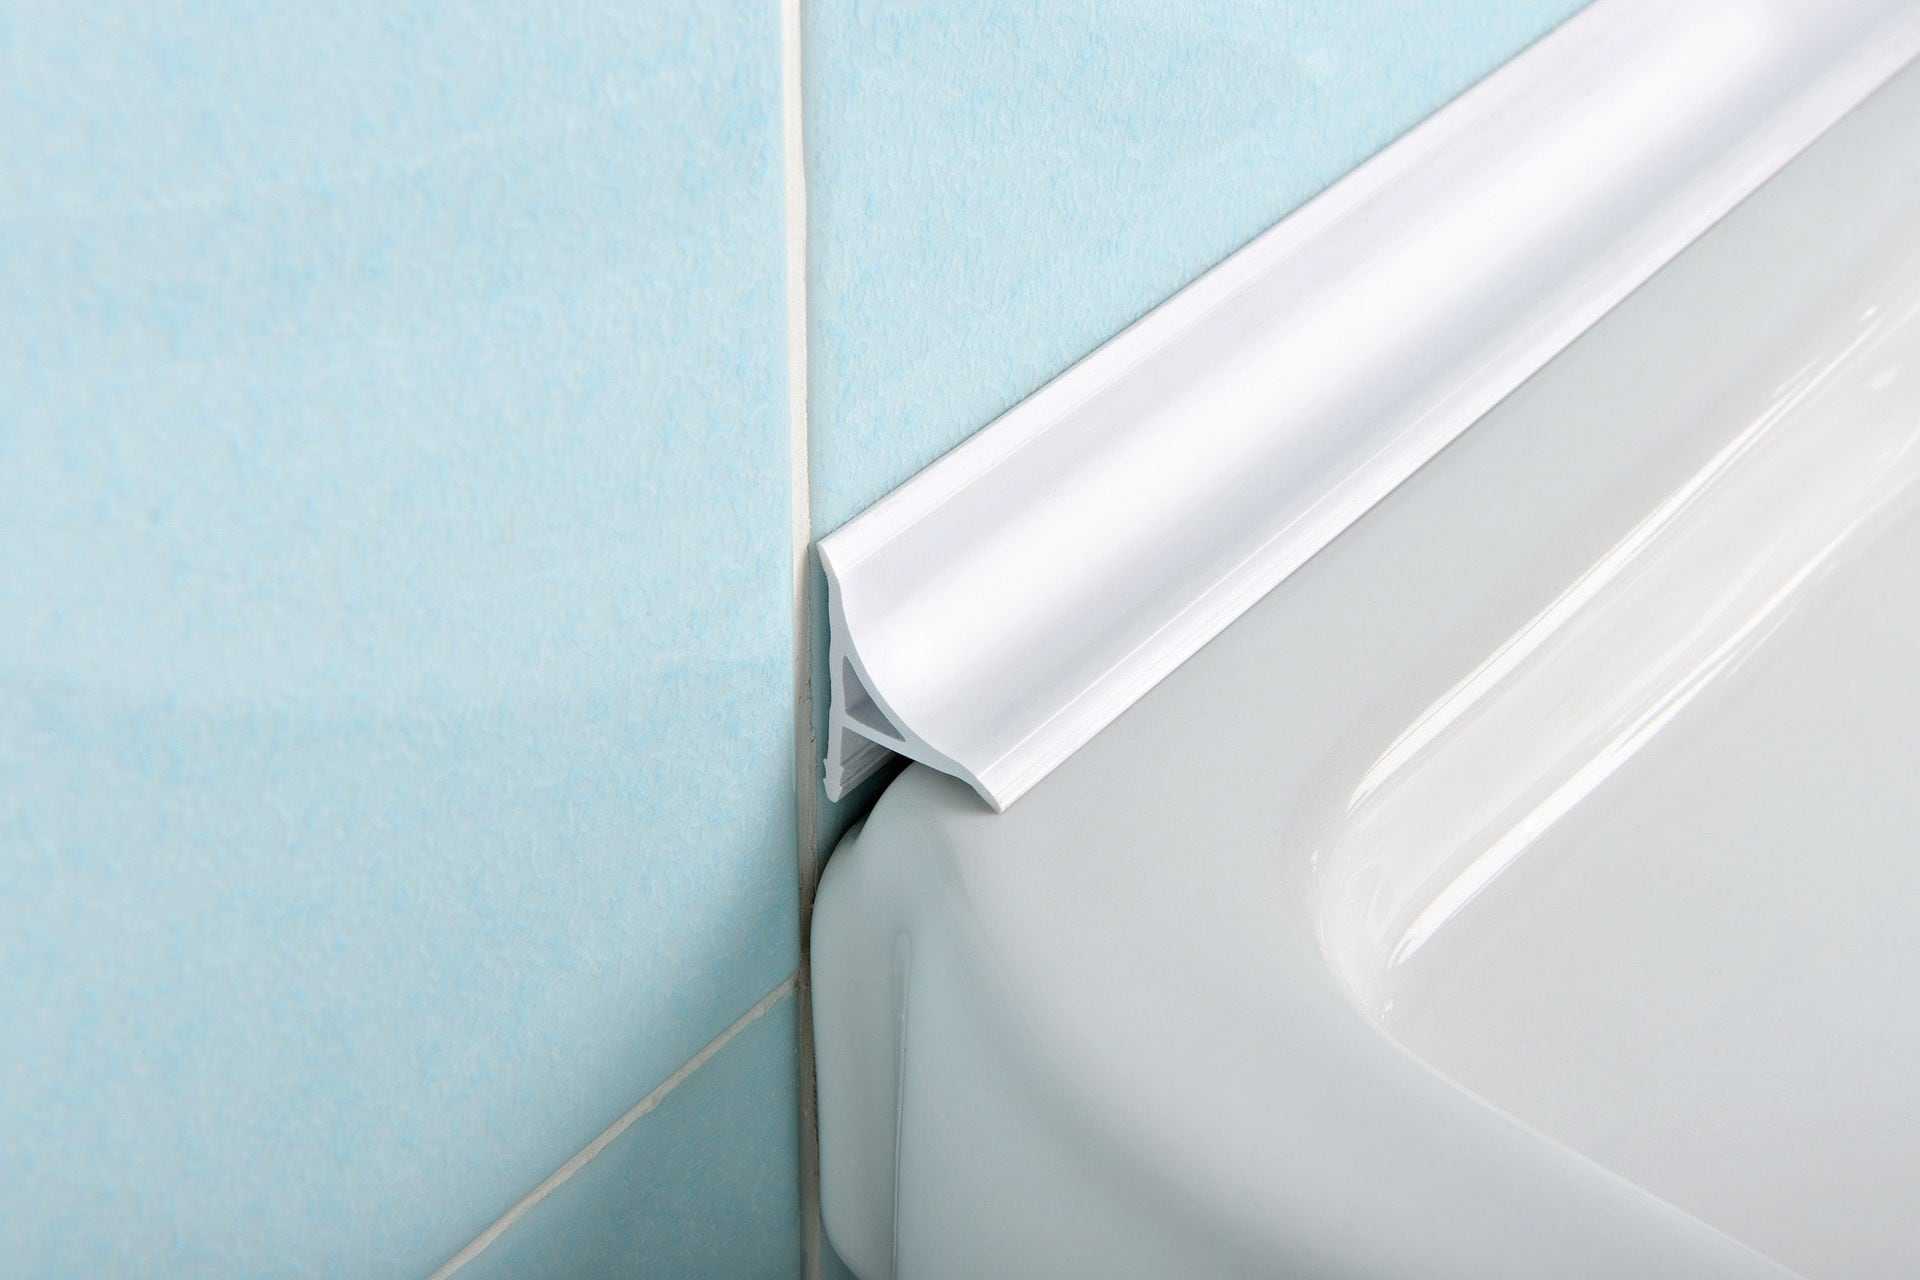 Как заделать щель между стеной и бортиками ванны: 7 простых способов